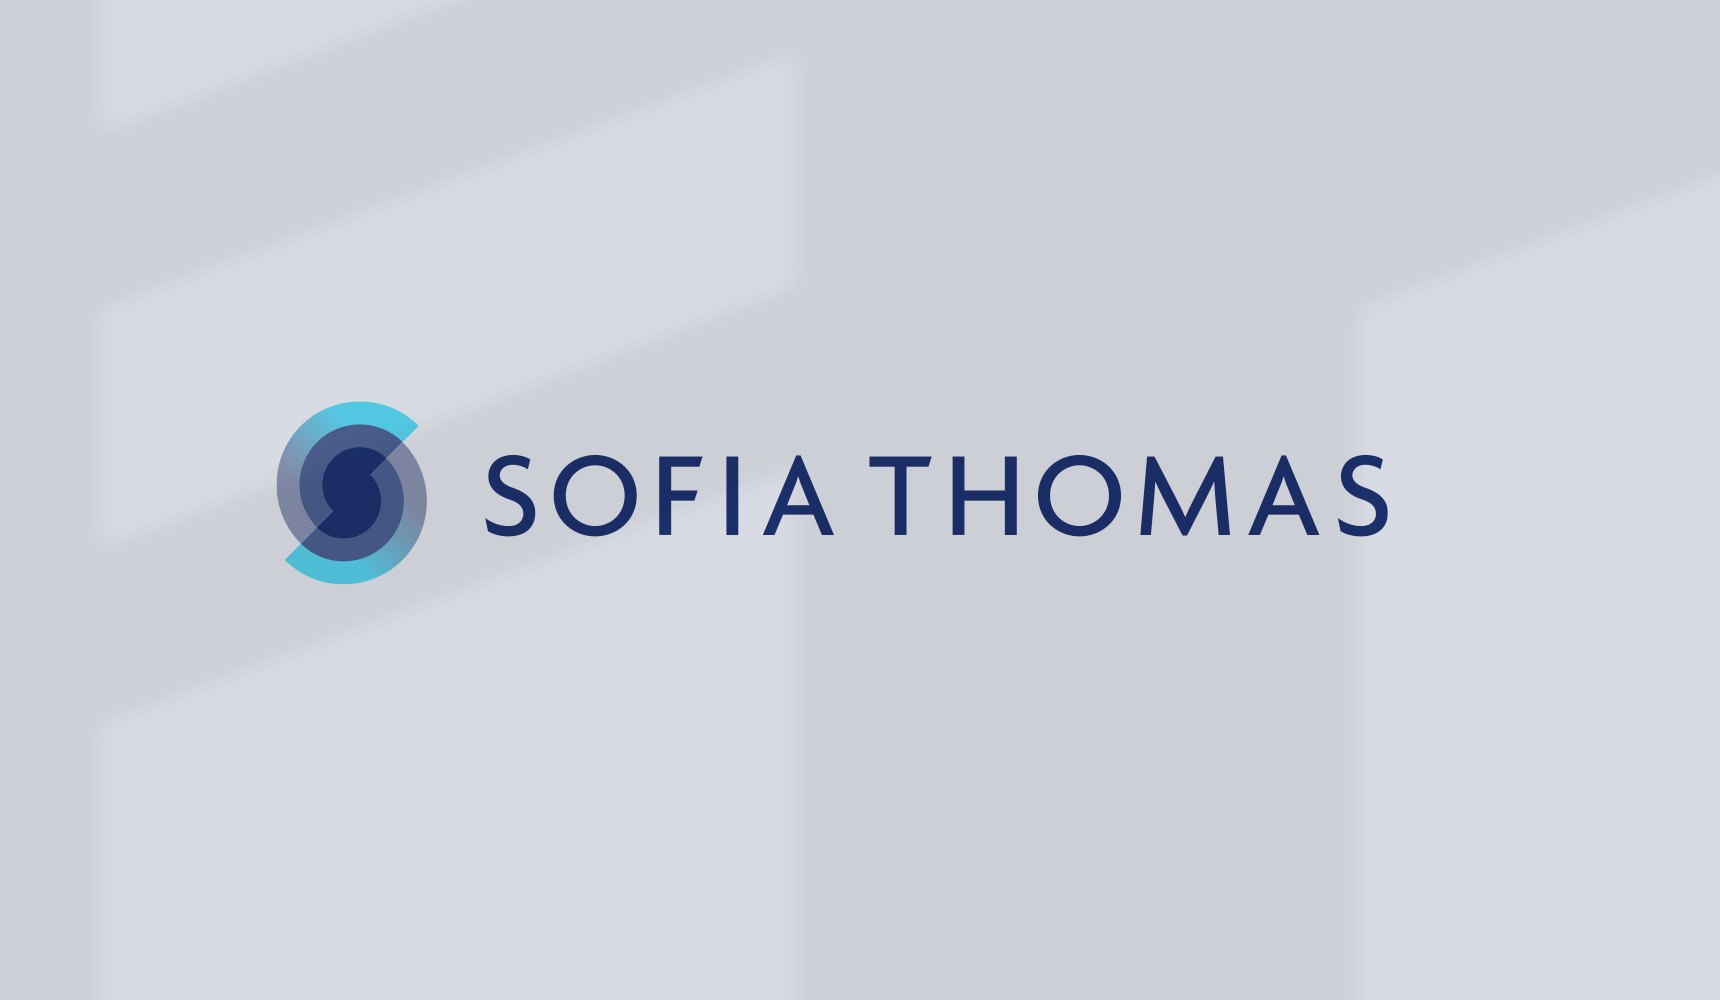 sofia thomas branding